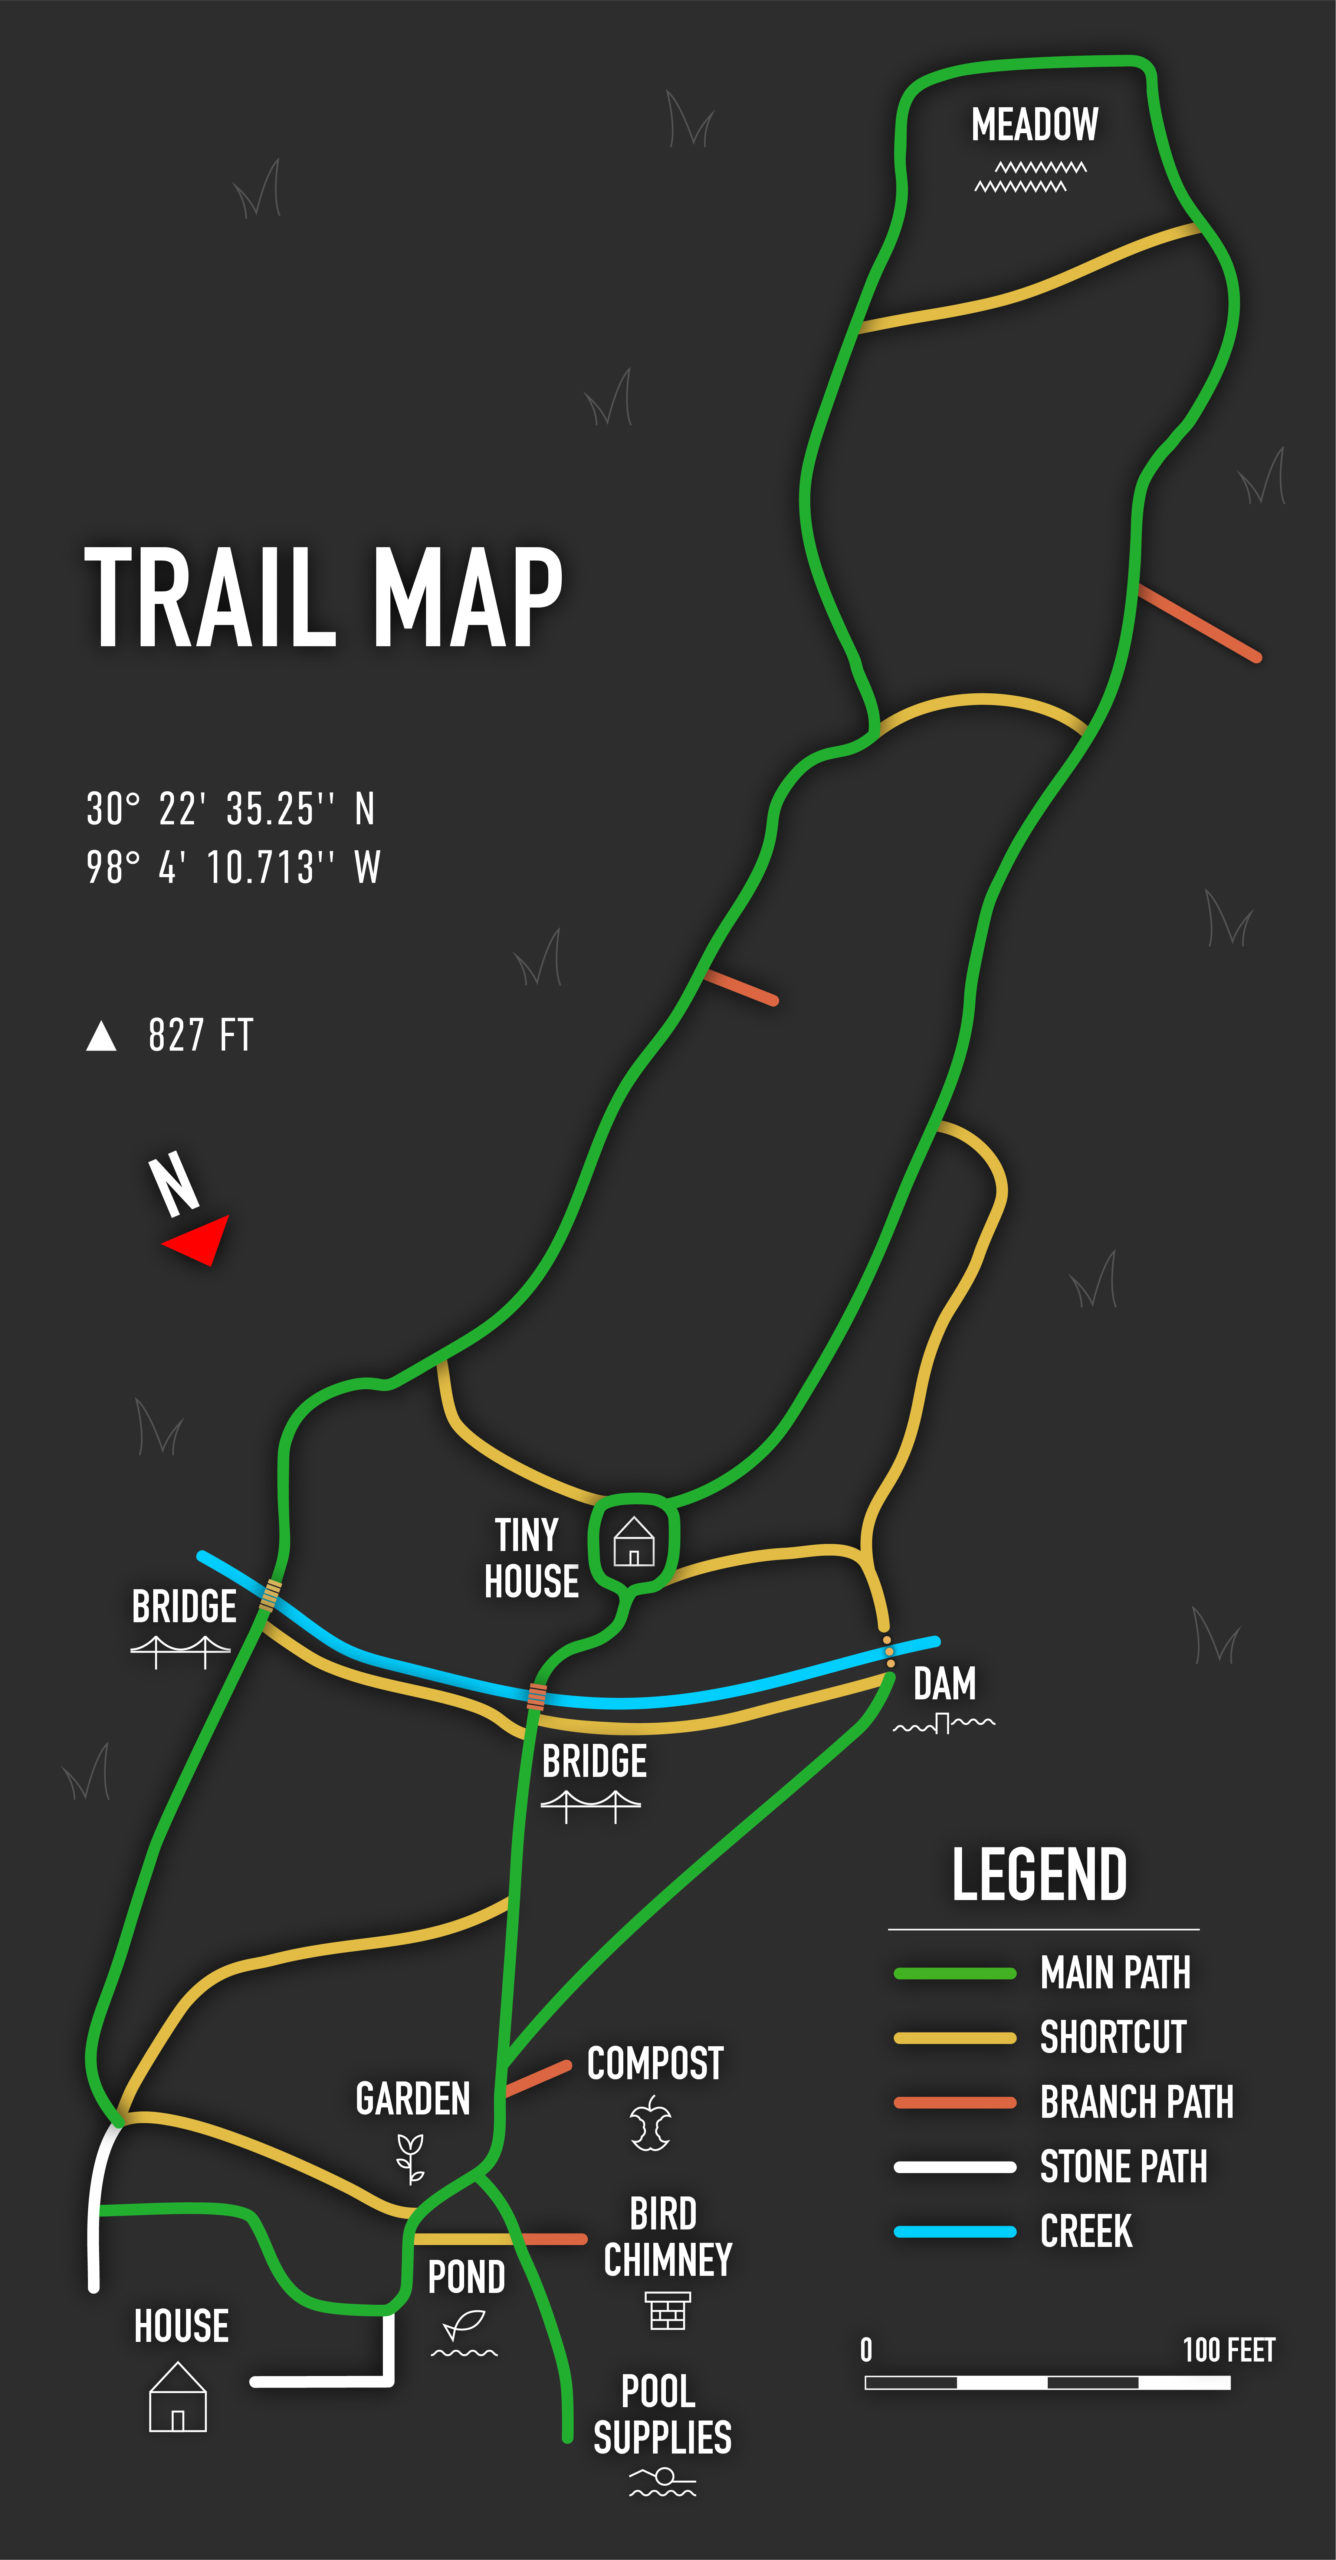 Trail map designed by Mason Barrera